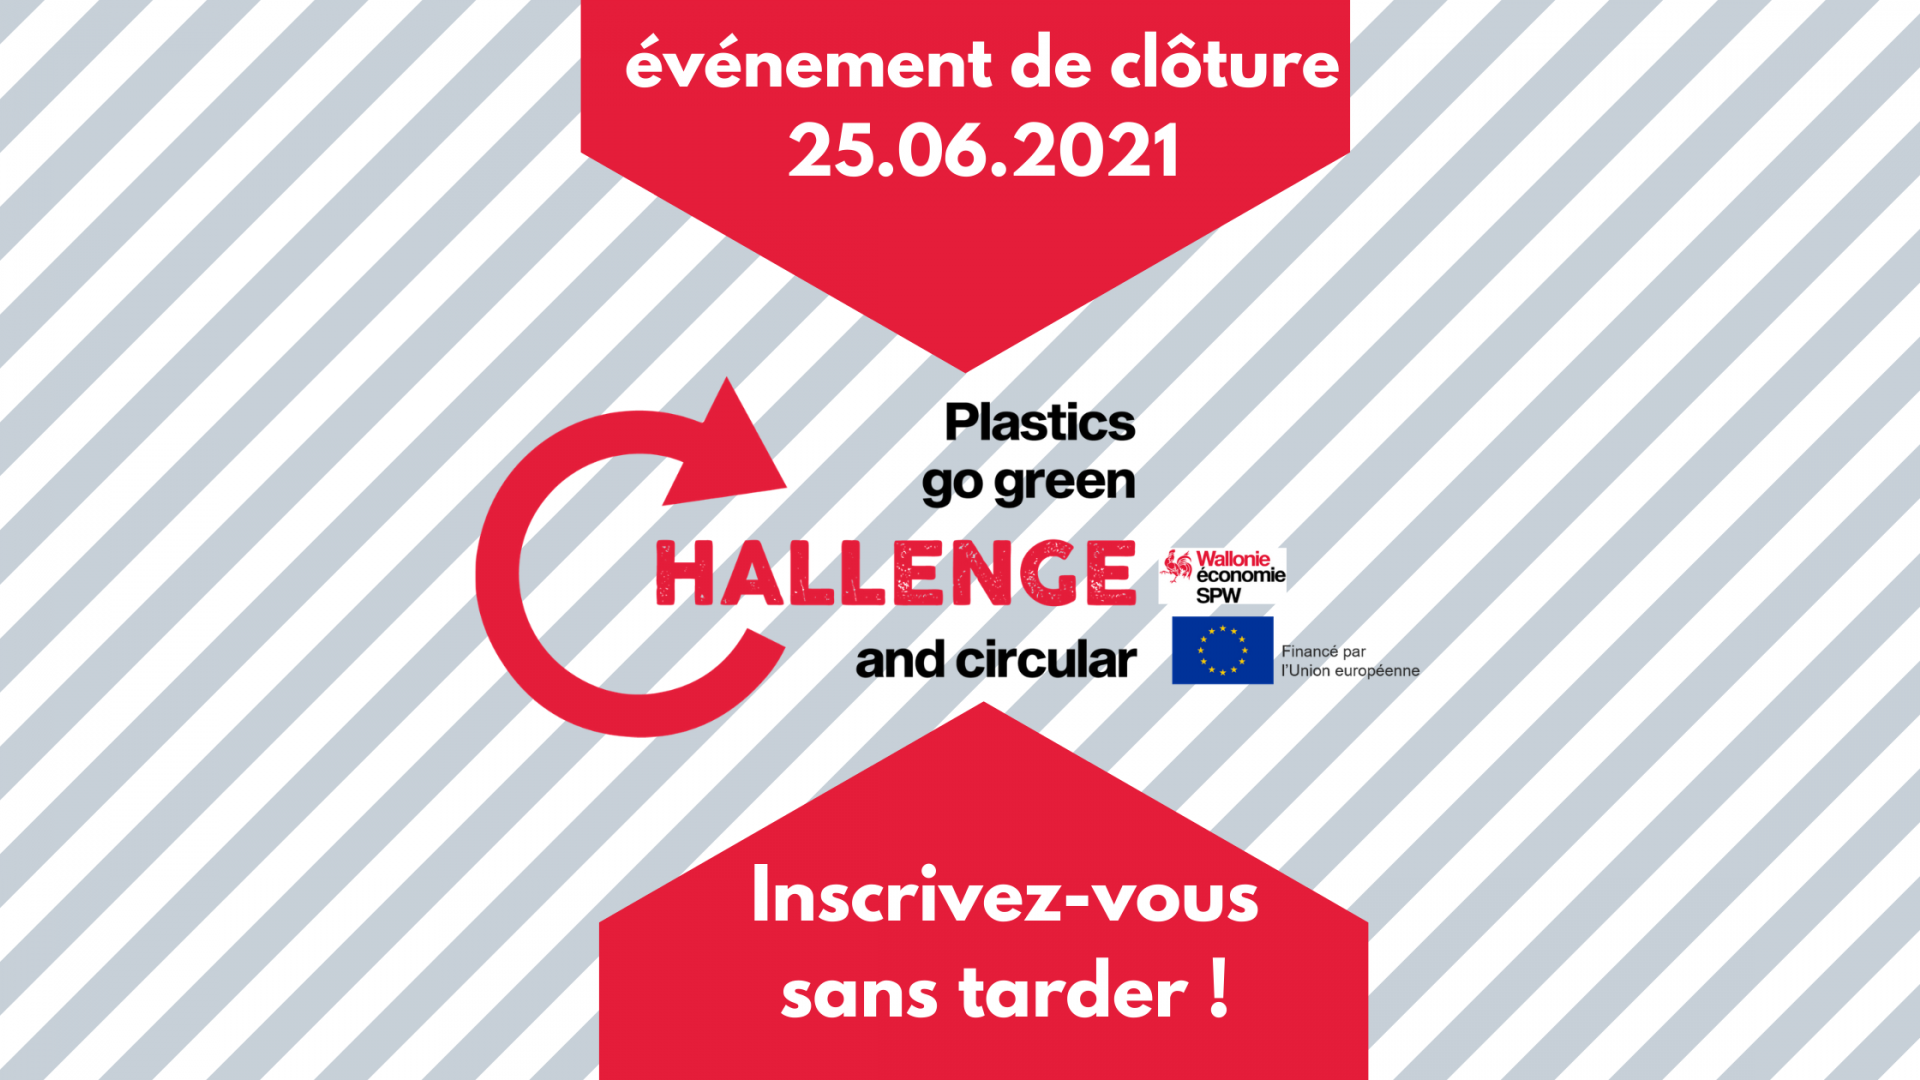 Participez à l'événement de clôture du Challenge Plastic Go Green & Circular